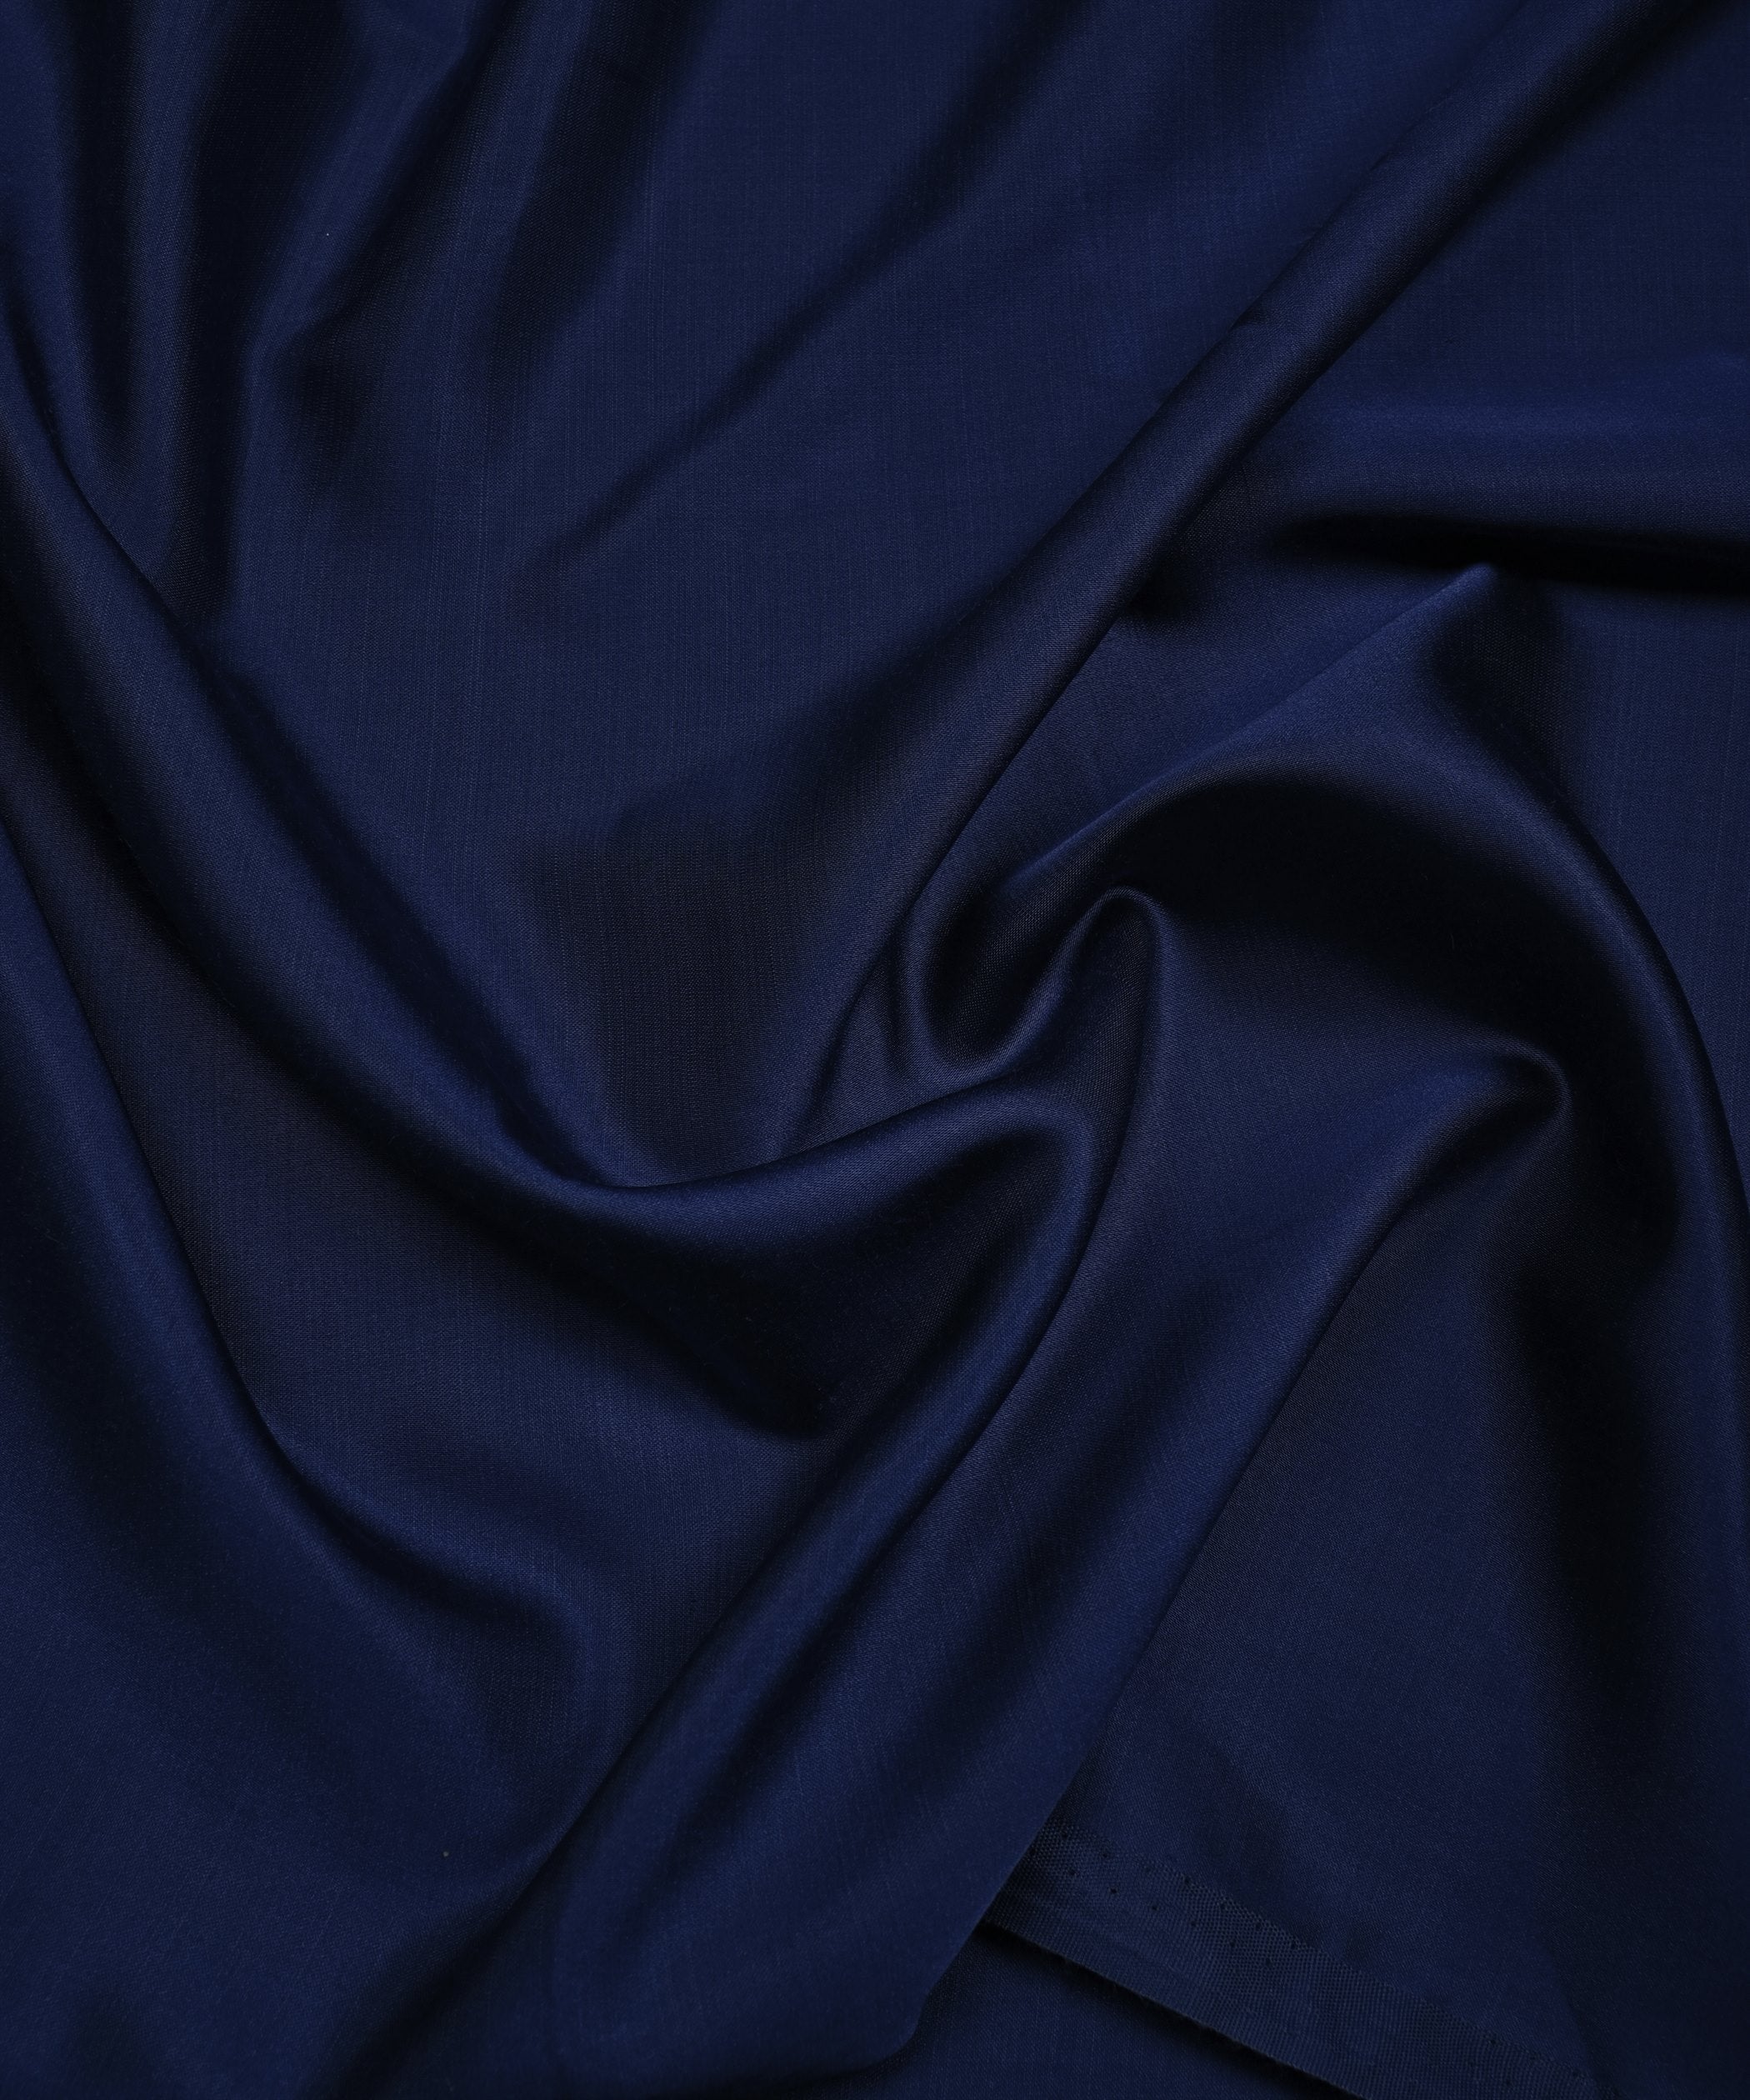 Navy Blue Plain Dyed Modal Satin Fabric